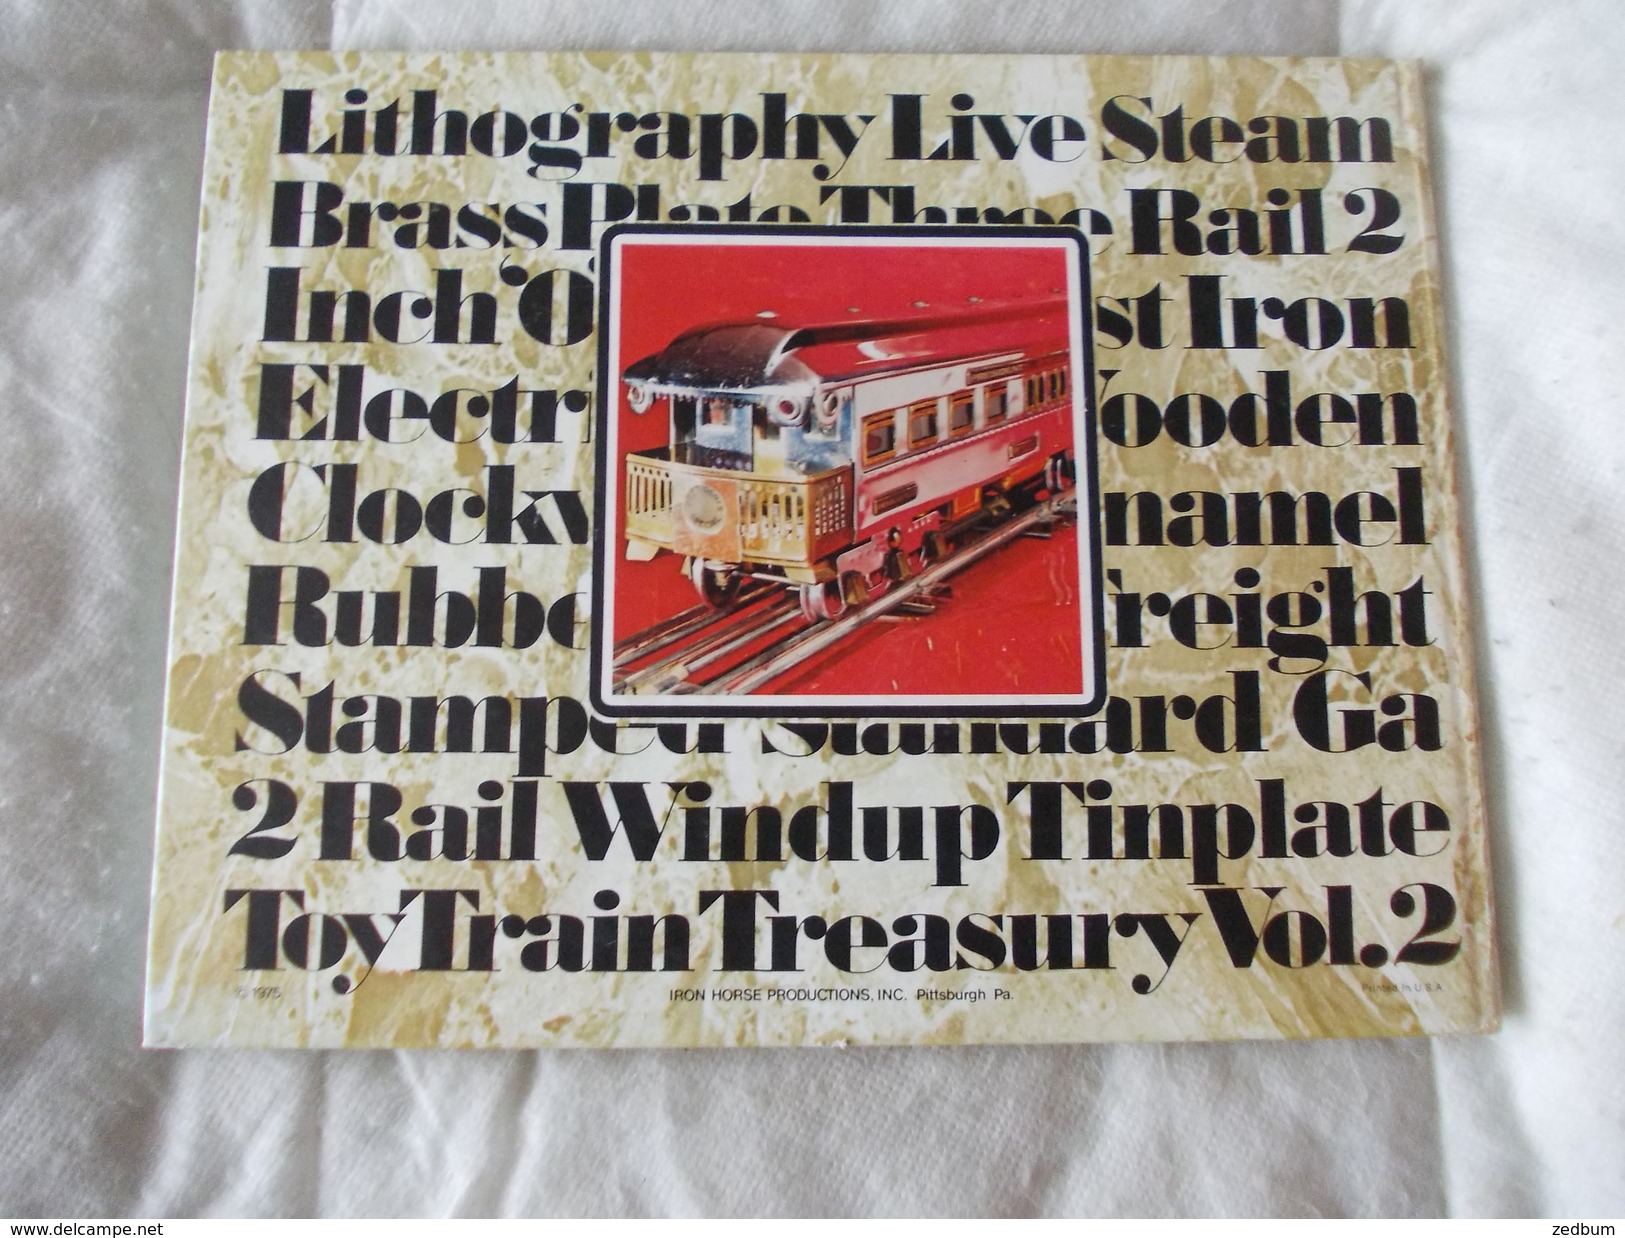 Toy Train Treasury Vol. 2 The Shempp Collection - Libri Sulle Collezioni